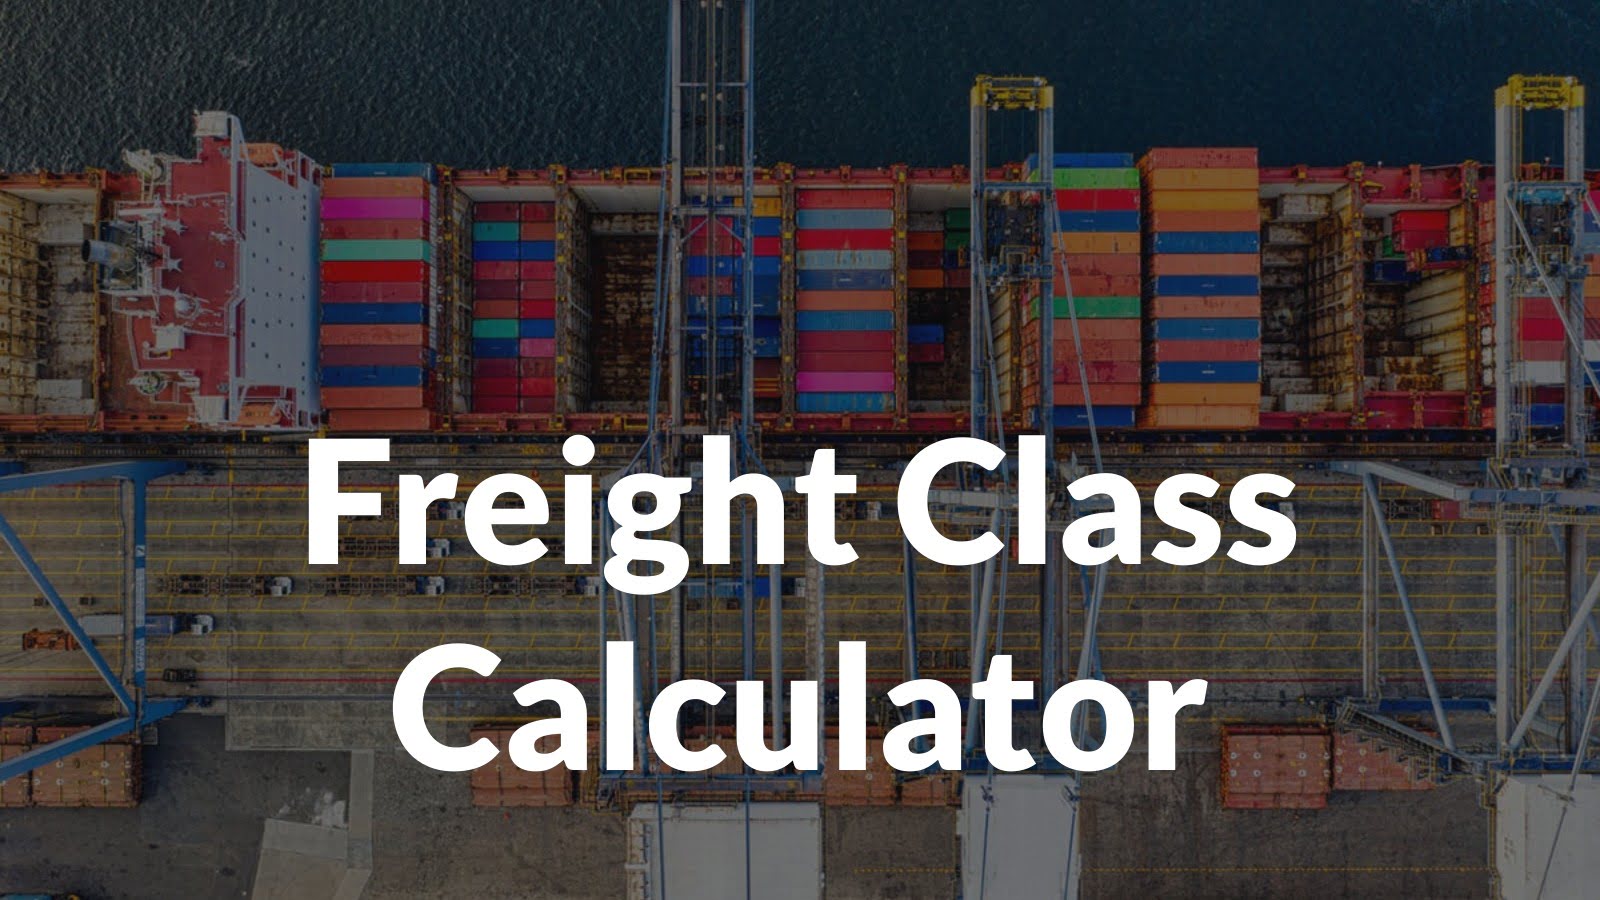 Freight Class Chart For Ltl